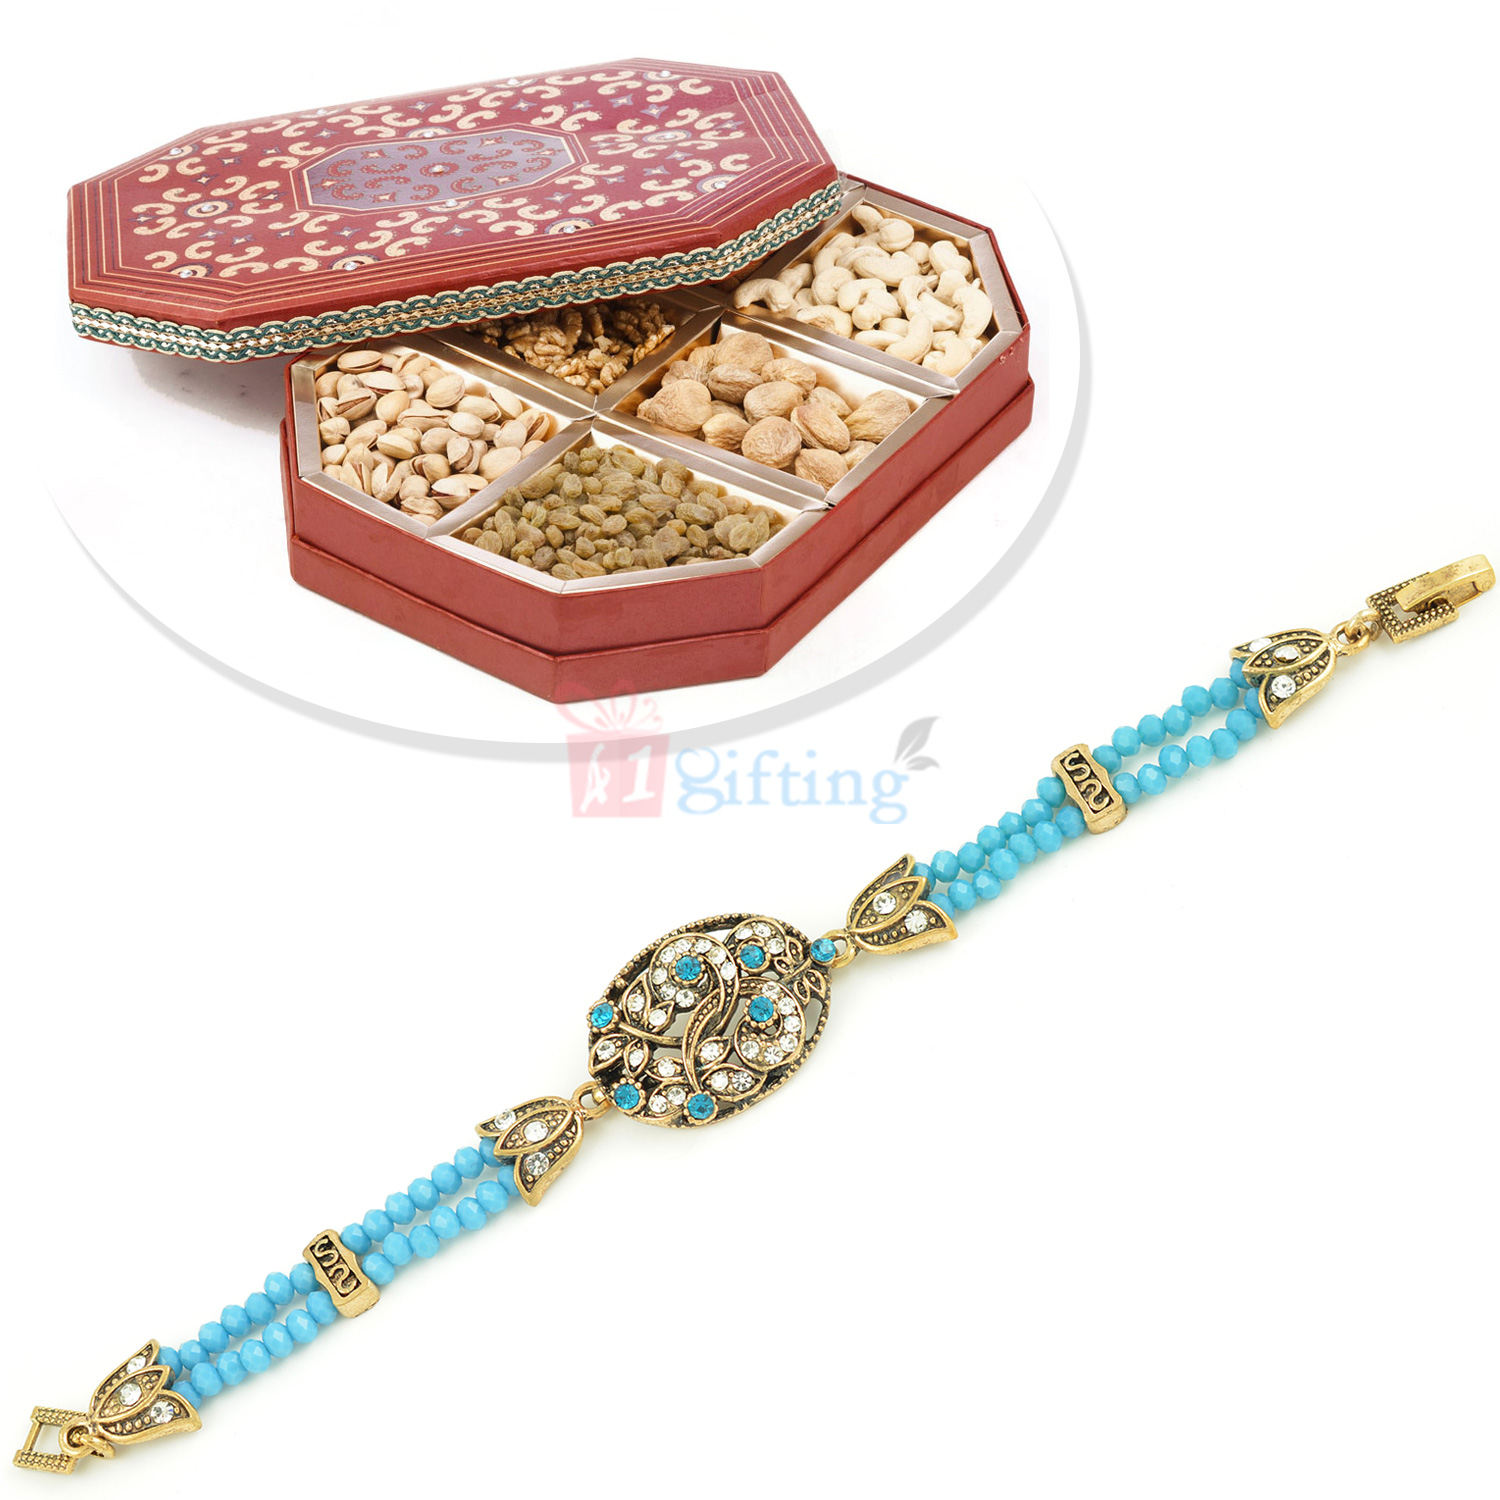 Antique Designer Beads Bracelet n Dryfruit Hamper of 6 Nuts